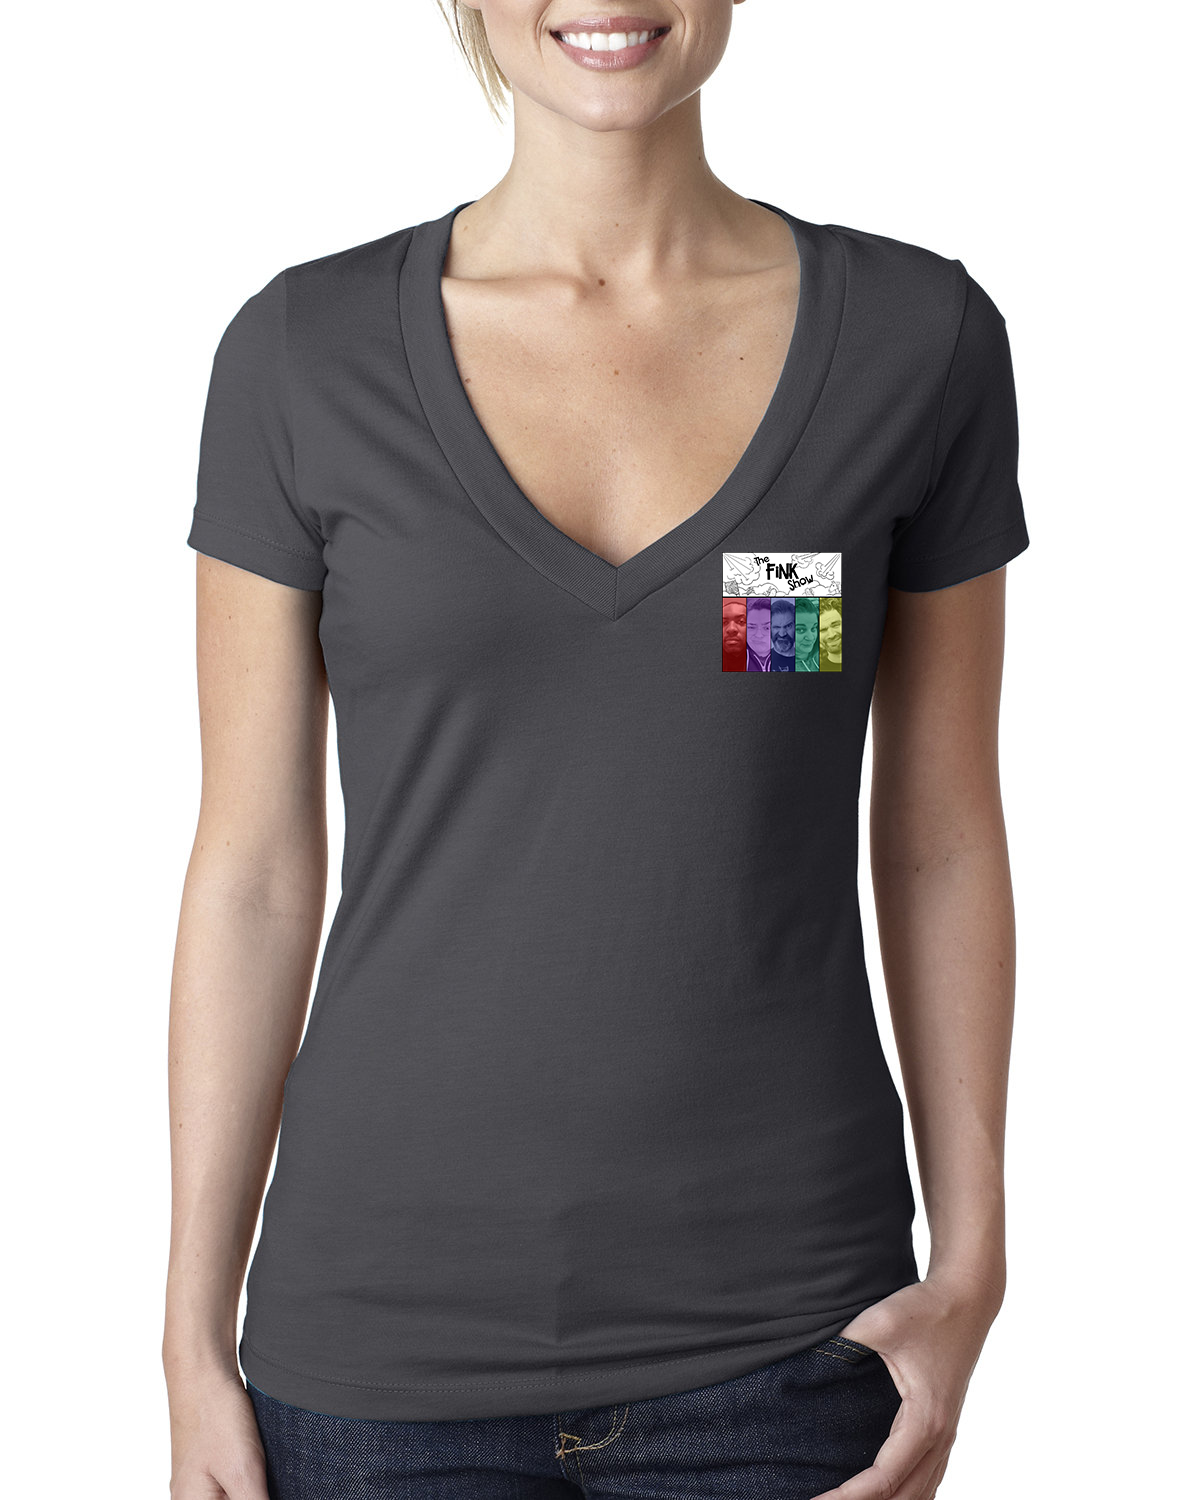 Fink Show Ladies Deep V-Neck T-shirt Pocket Sized V3.0 Logo